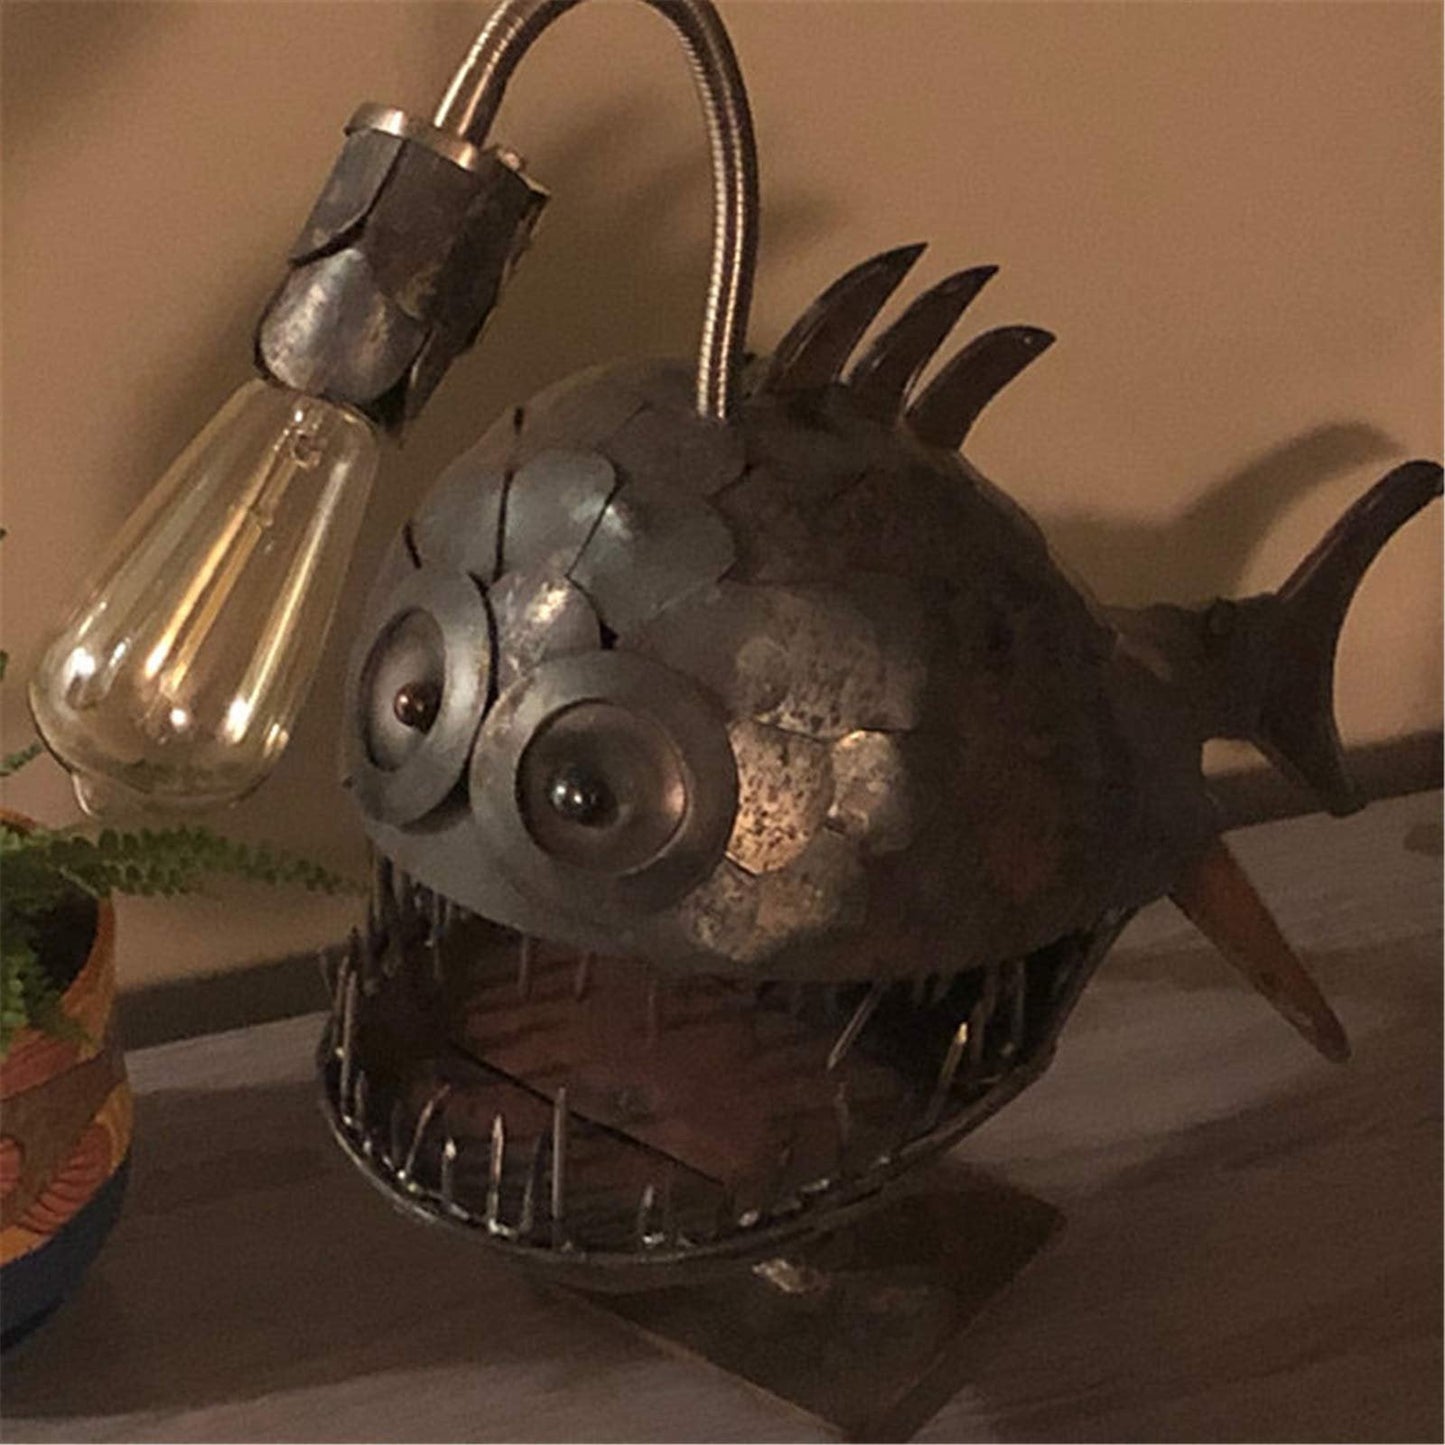 🐟🐟Angler Fish Lamp-Best Home Decor Custom Art🔥🔥